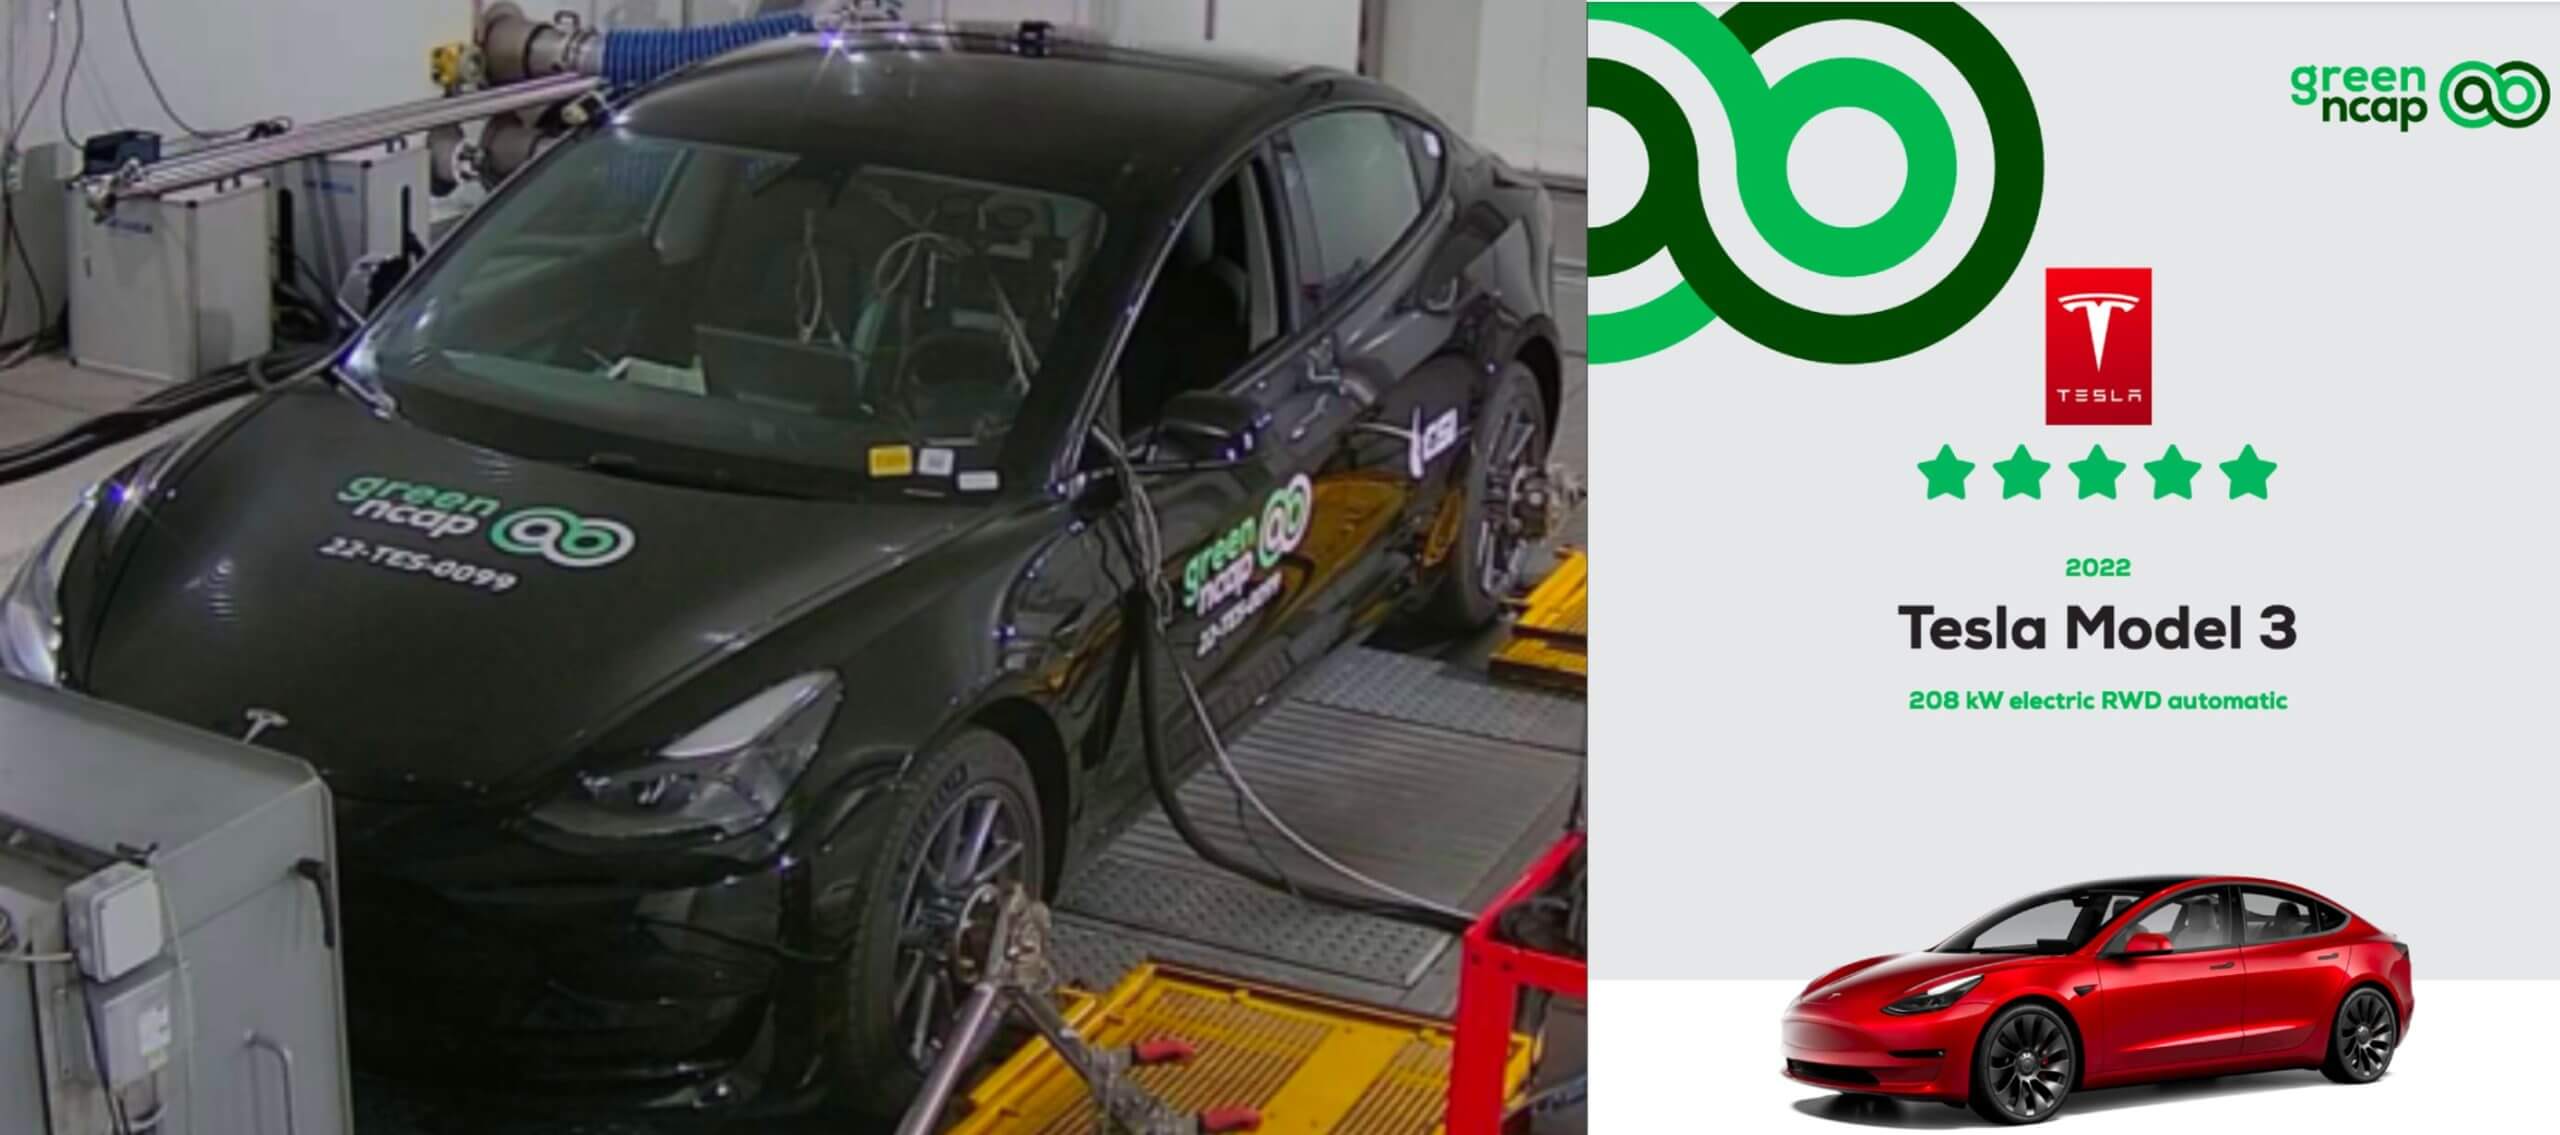 Tesla Model 3 получила 5 звезд от Green NCAP